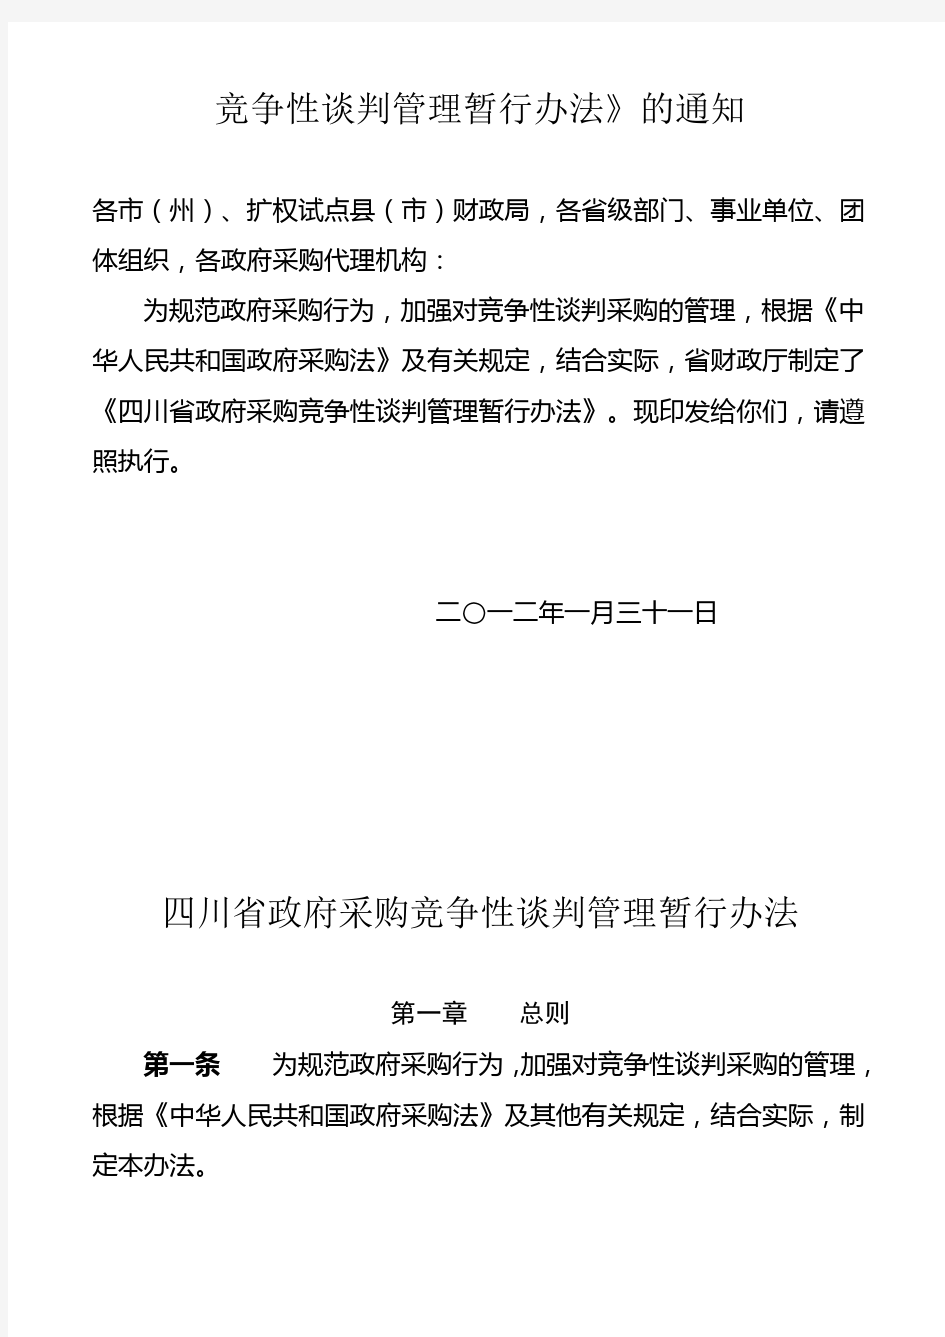 四川省政府采购竞争性谈判管理暂行办法